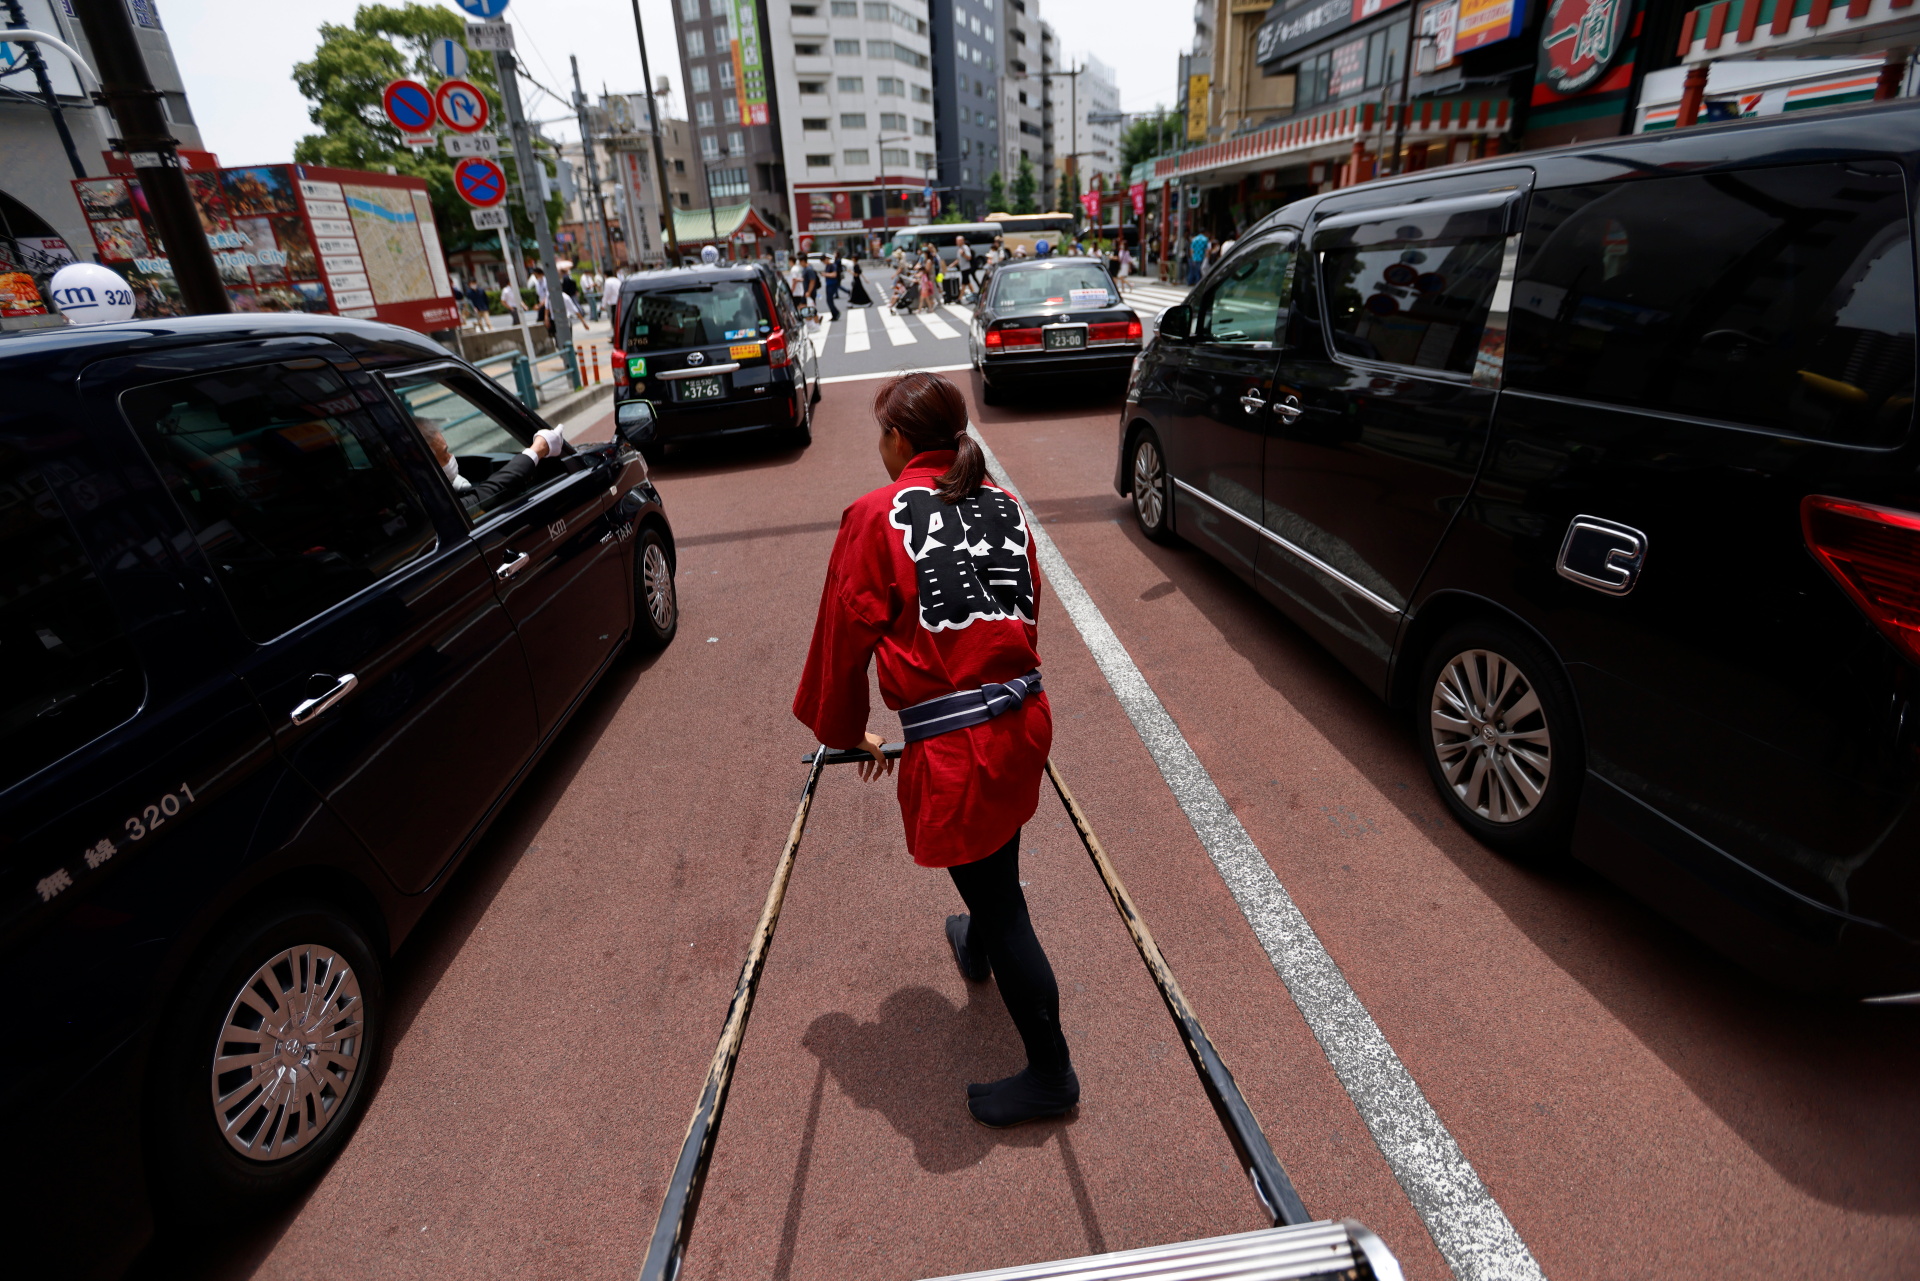 Hình ảnh các cô gái tuổi đôi mươi kéo xe nặng cả trăm kg ở Nhật Bản - Ảnh 9.